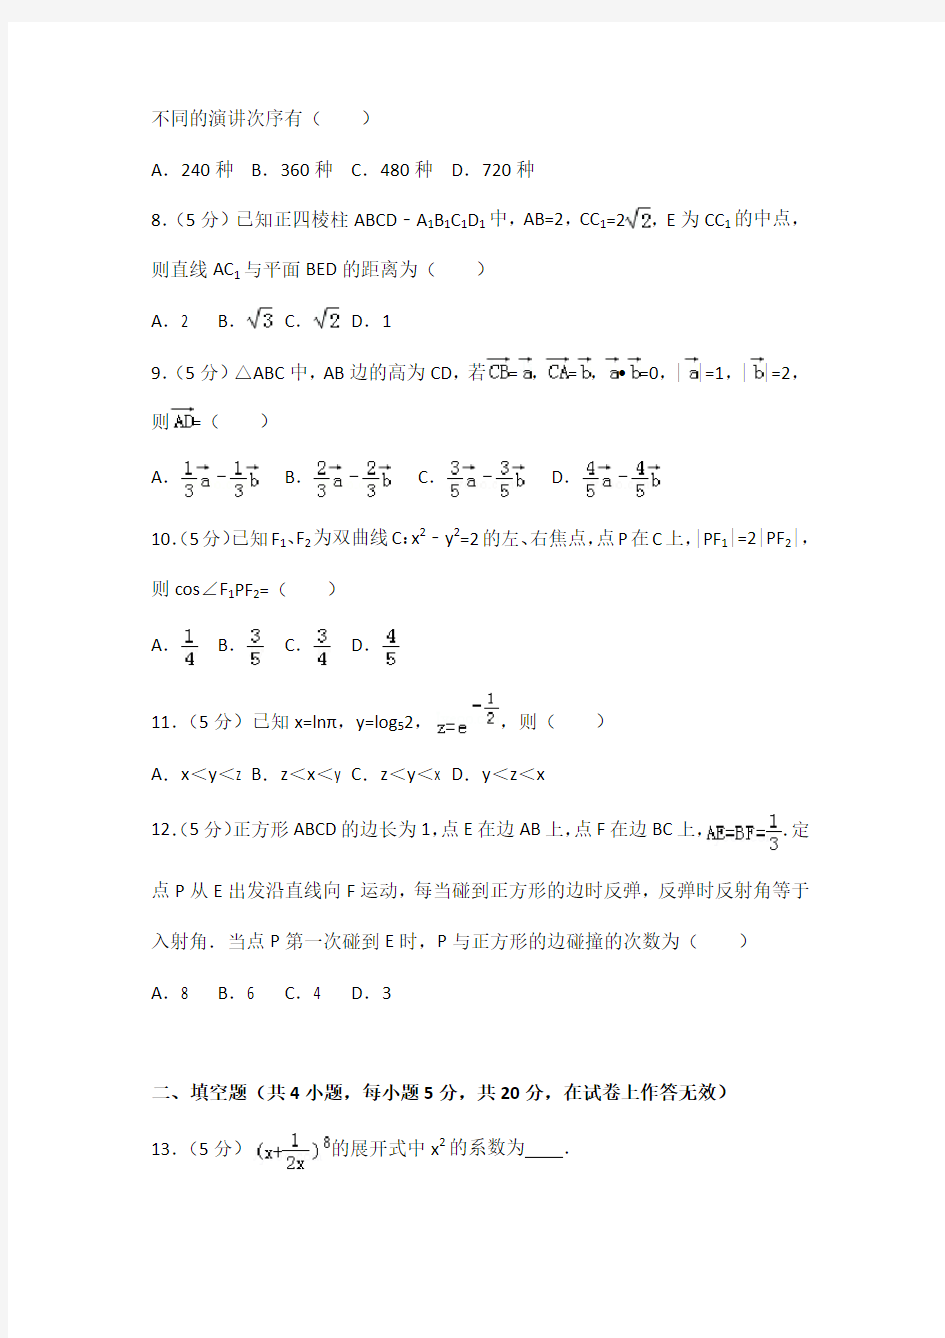 2012年全国统一高考数学试卷(文科)(大纲版)